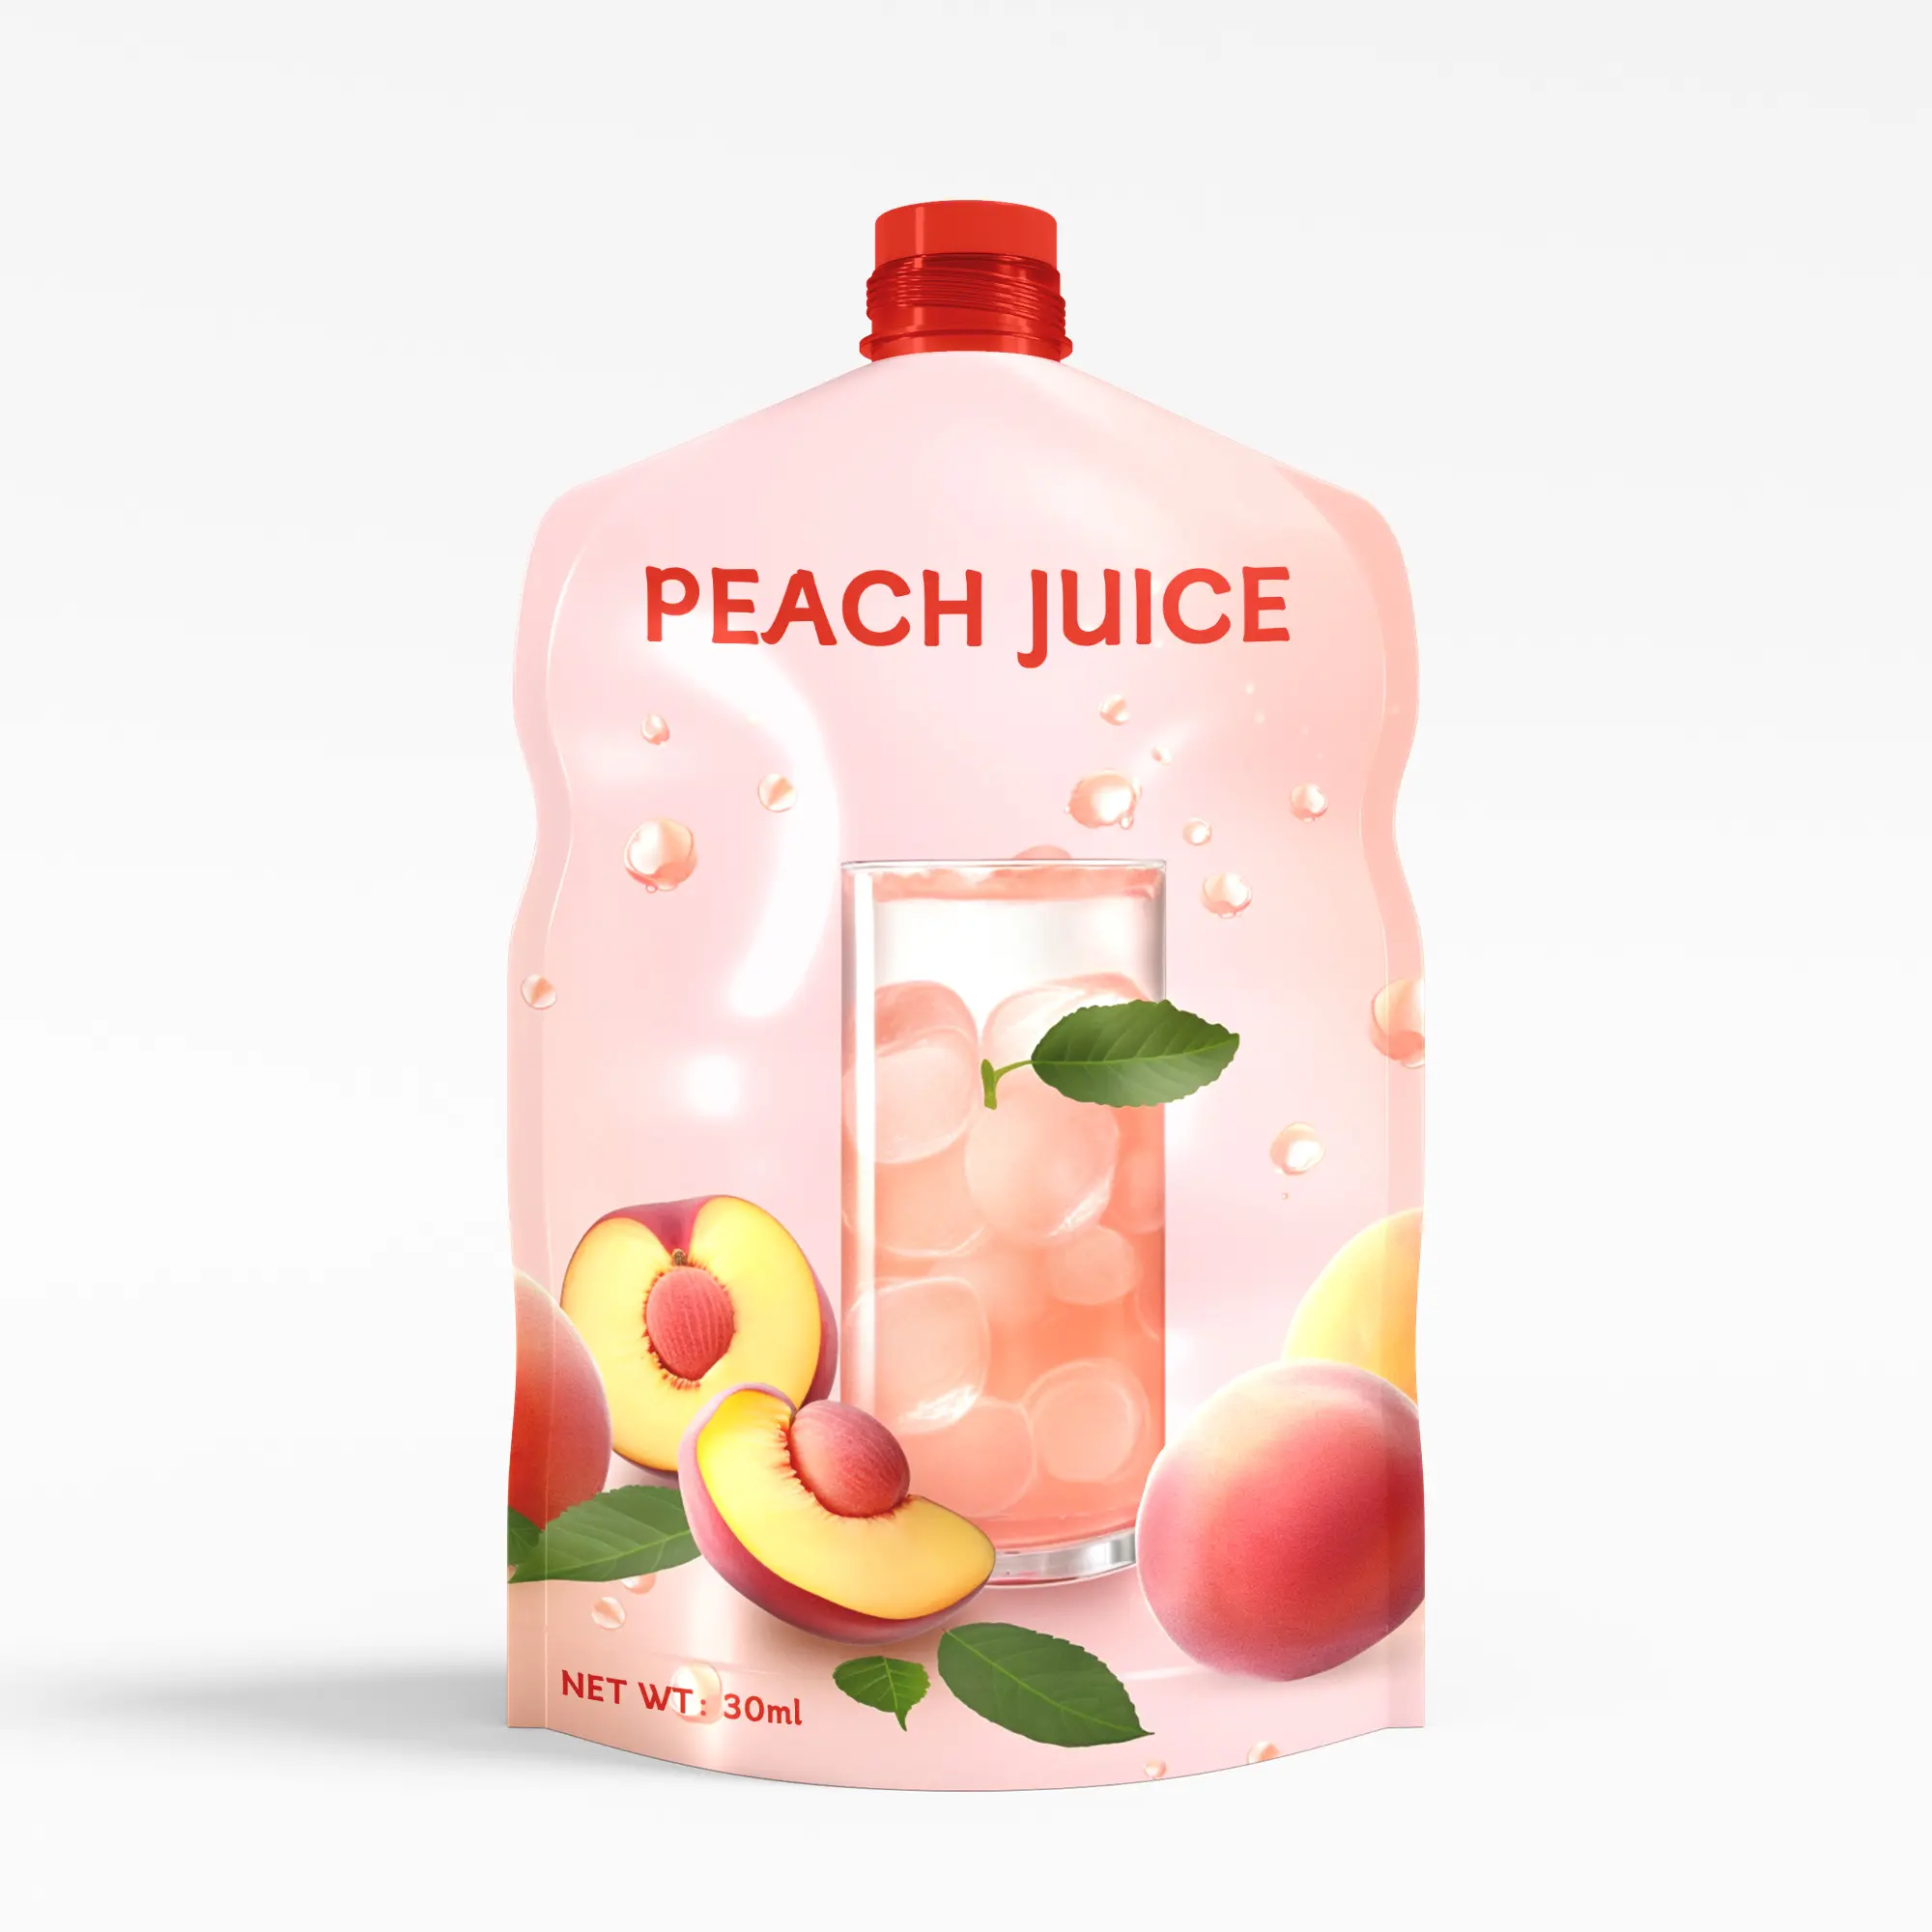 A juice bag with a spout